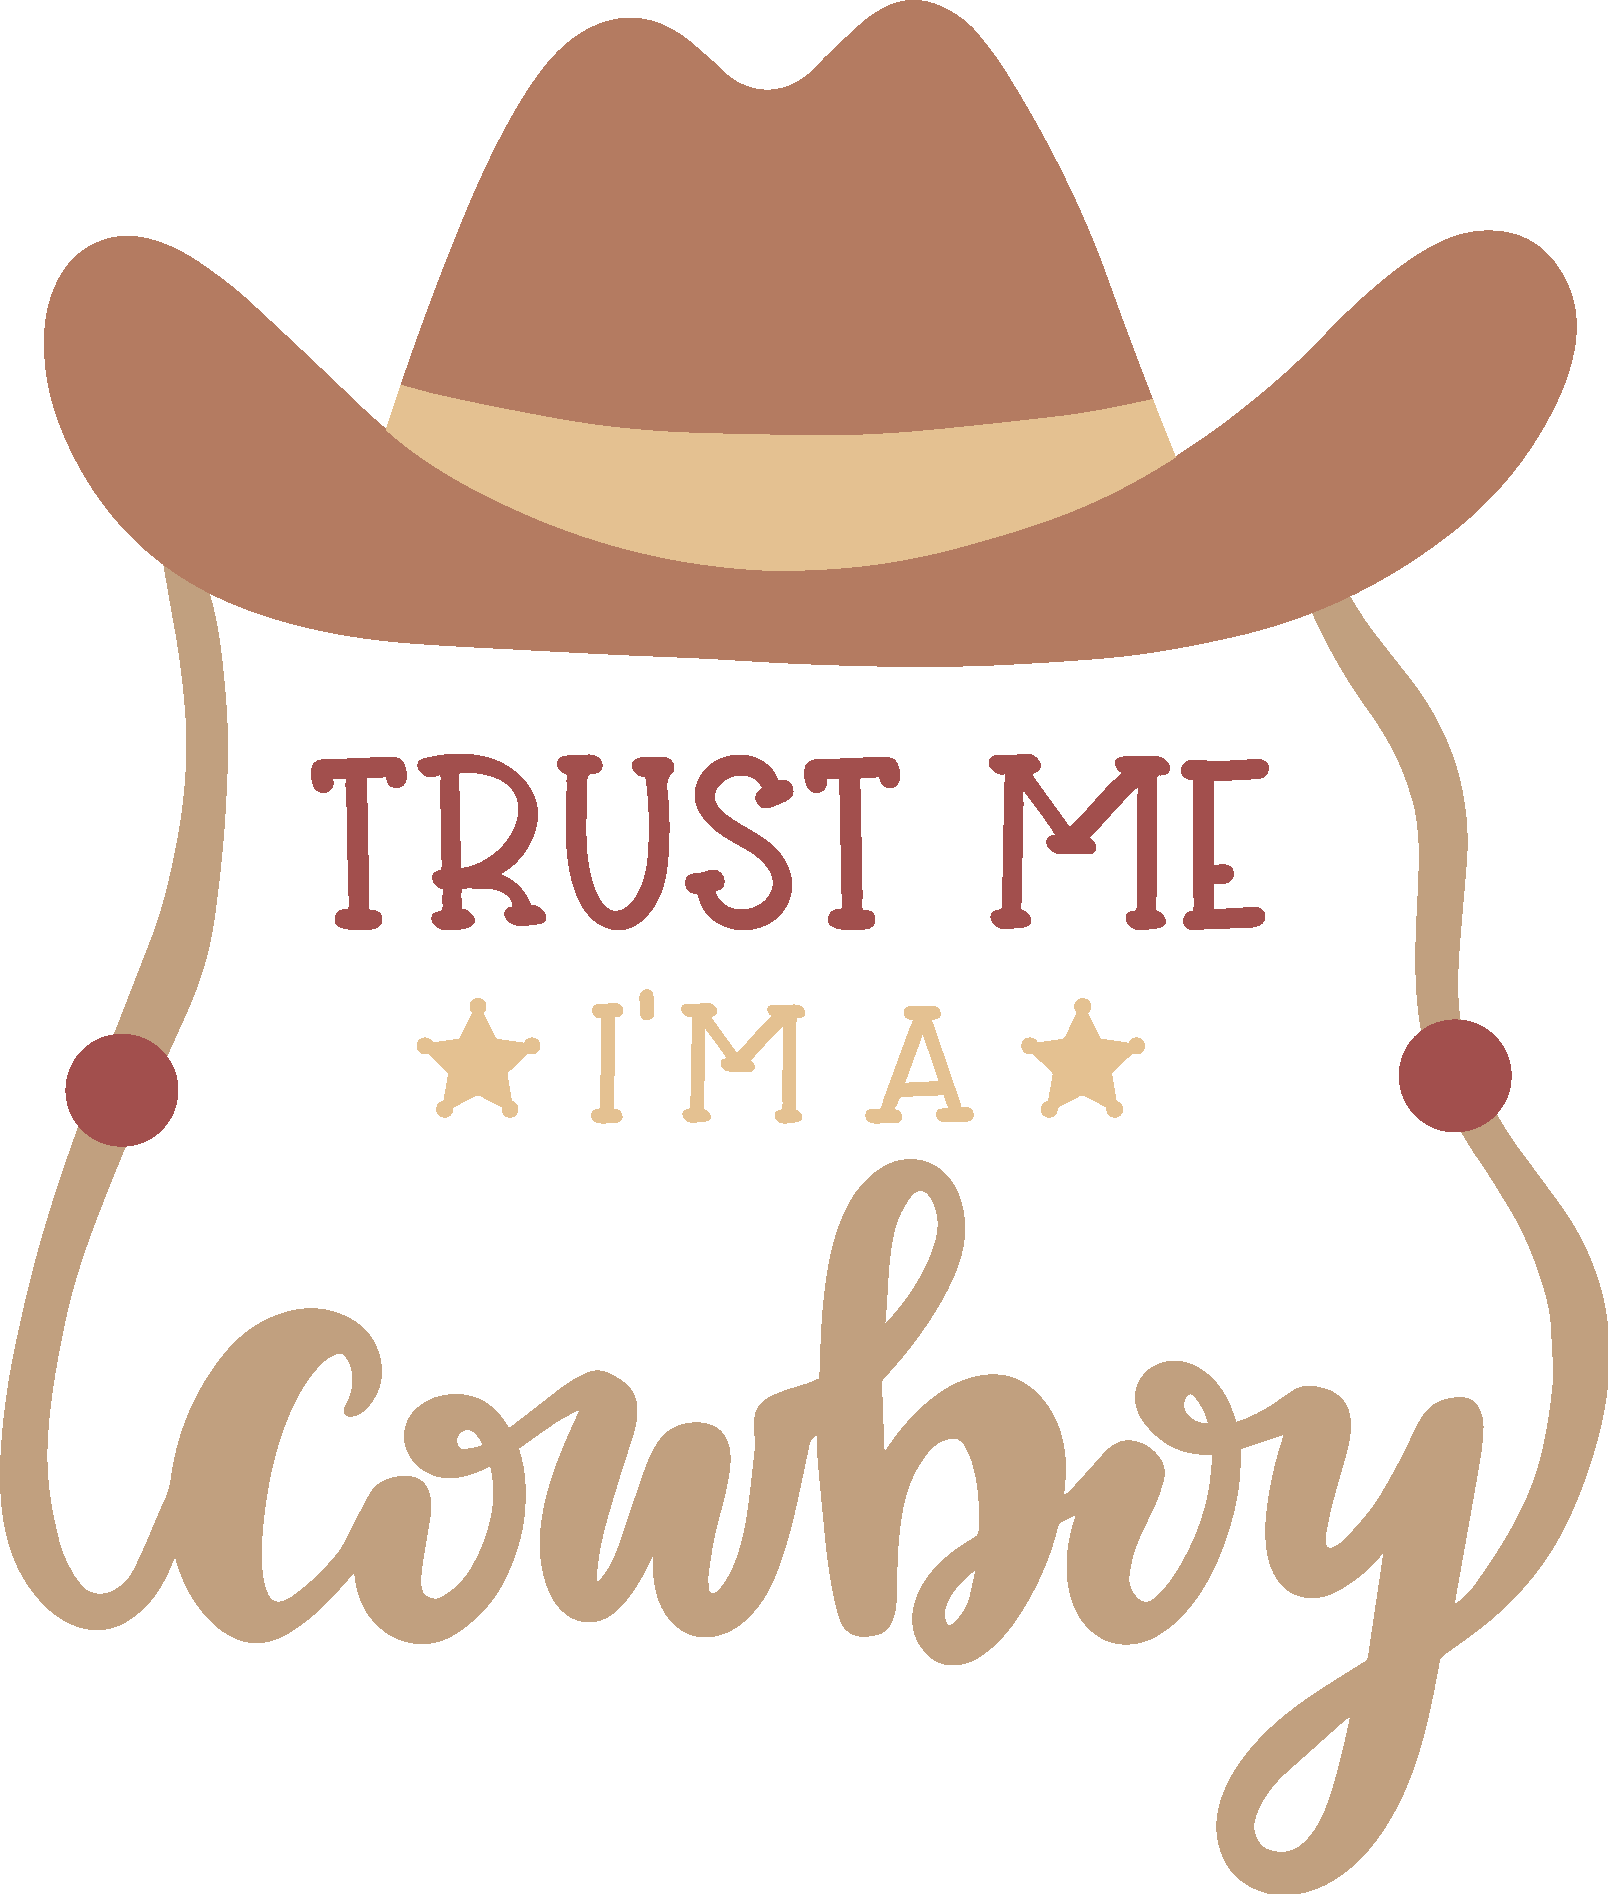 TRUST ME I’M A COWBOY Logo Vector.svg